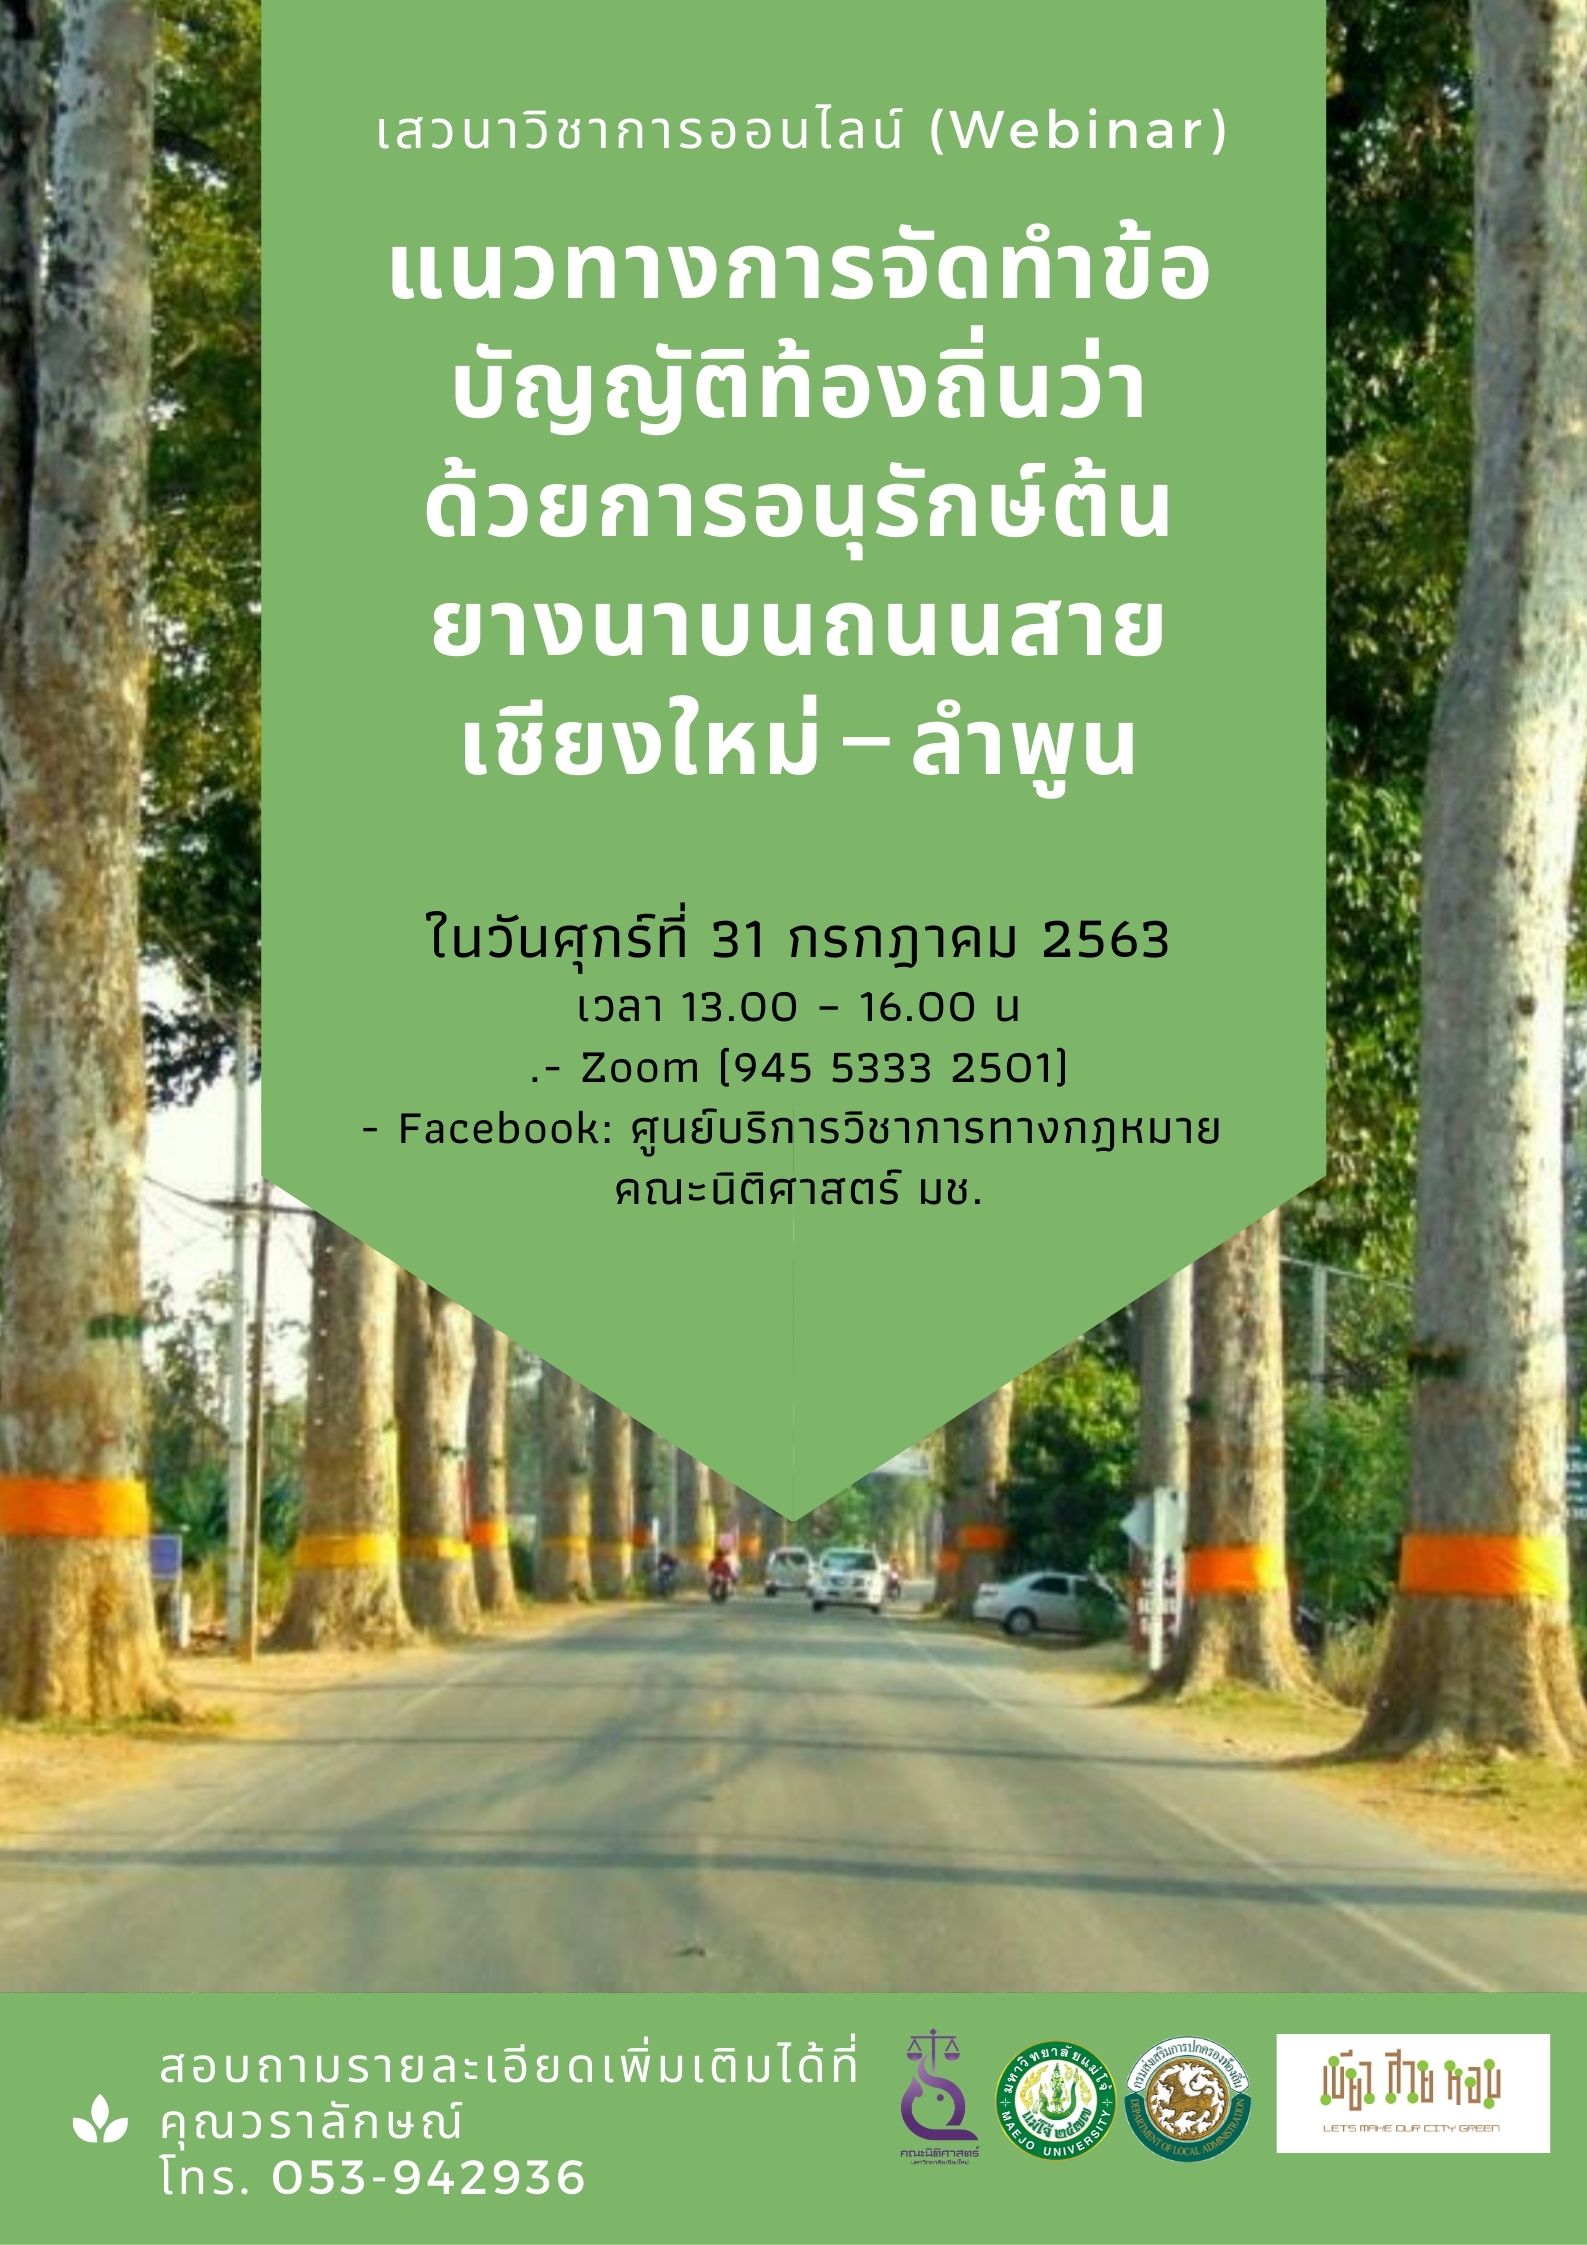 Webinar หัวข้อ แนวทางการจัดทำข้อบัญญัติท้องถิ่นว่าด้วยการอนุรักษ์ต้นยางนาบนถนนสายเชียงใหม่ – ลำพูน (31 ก.ค. 63)